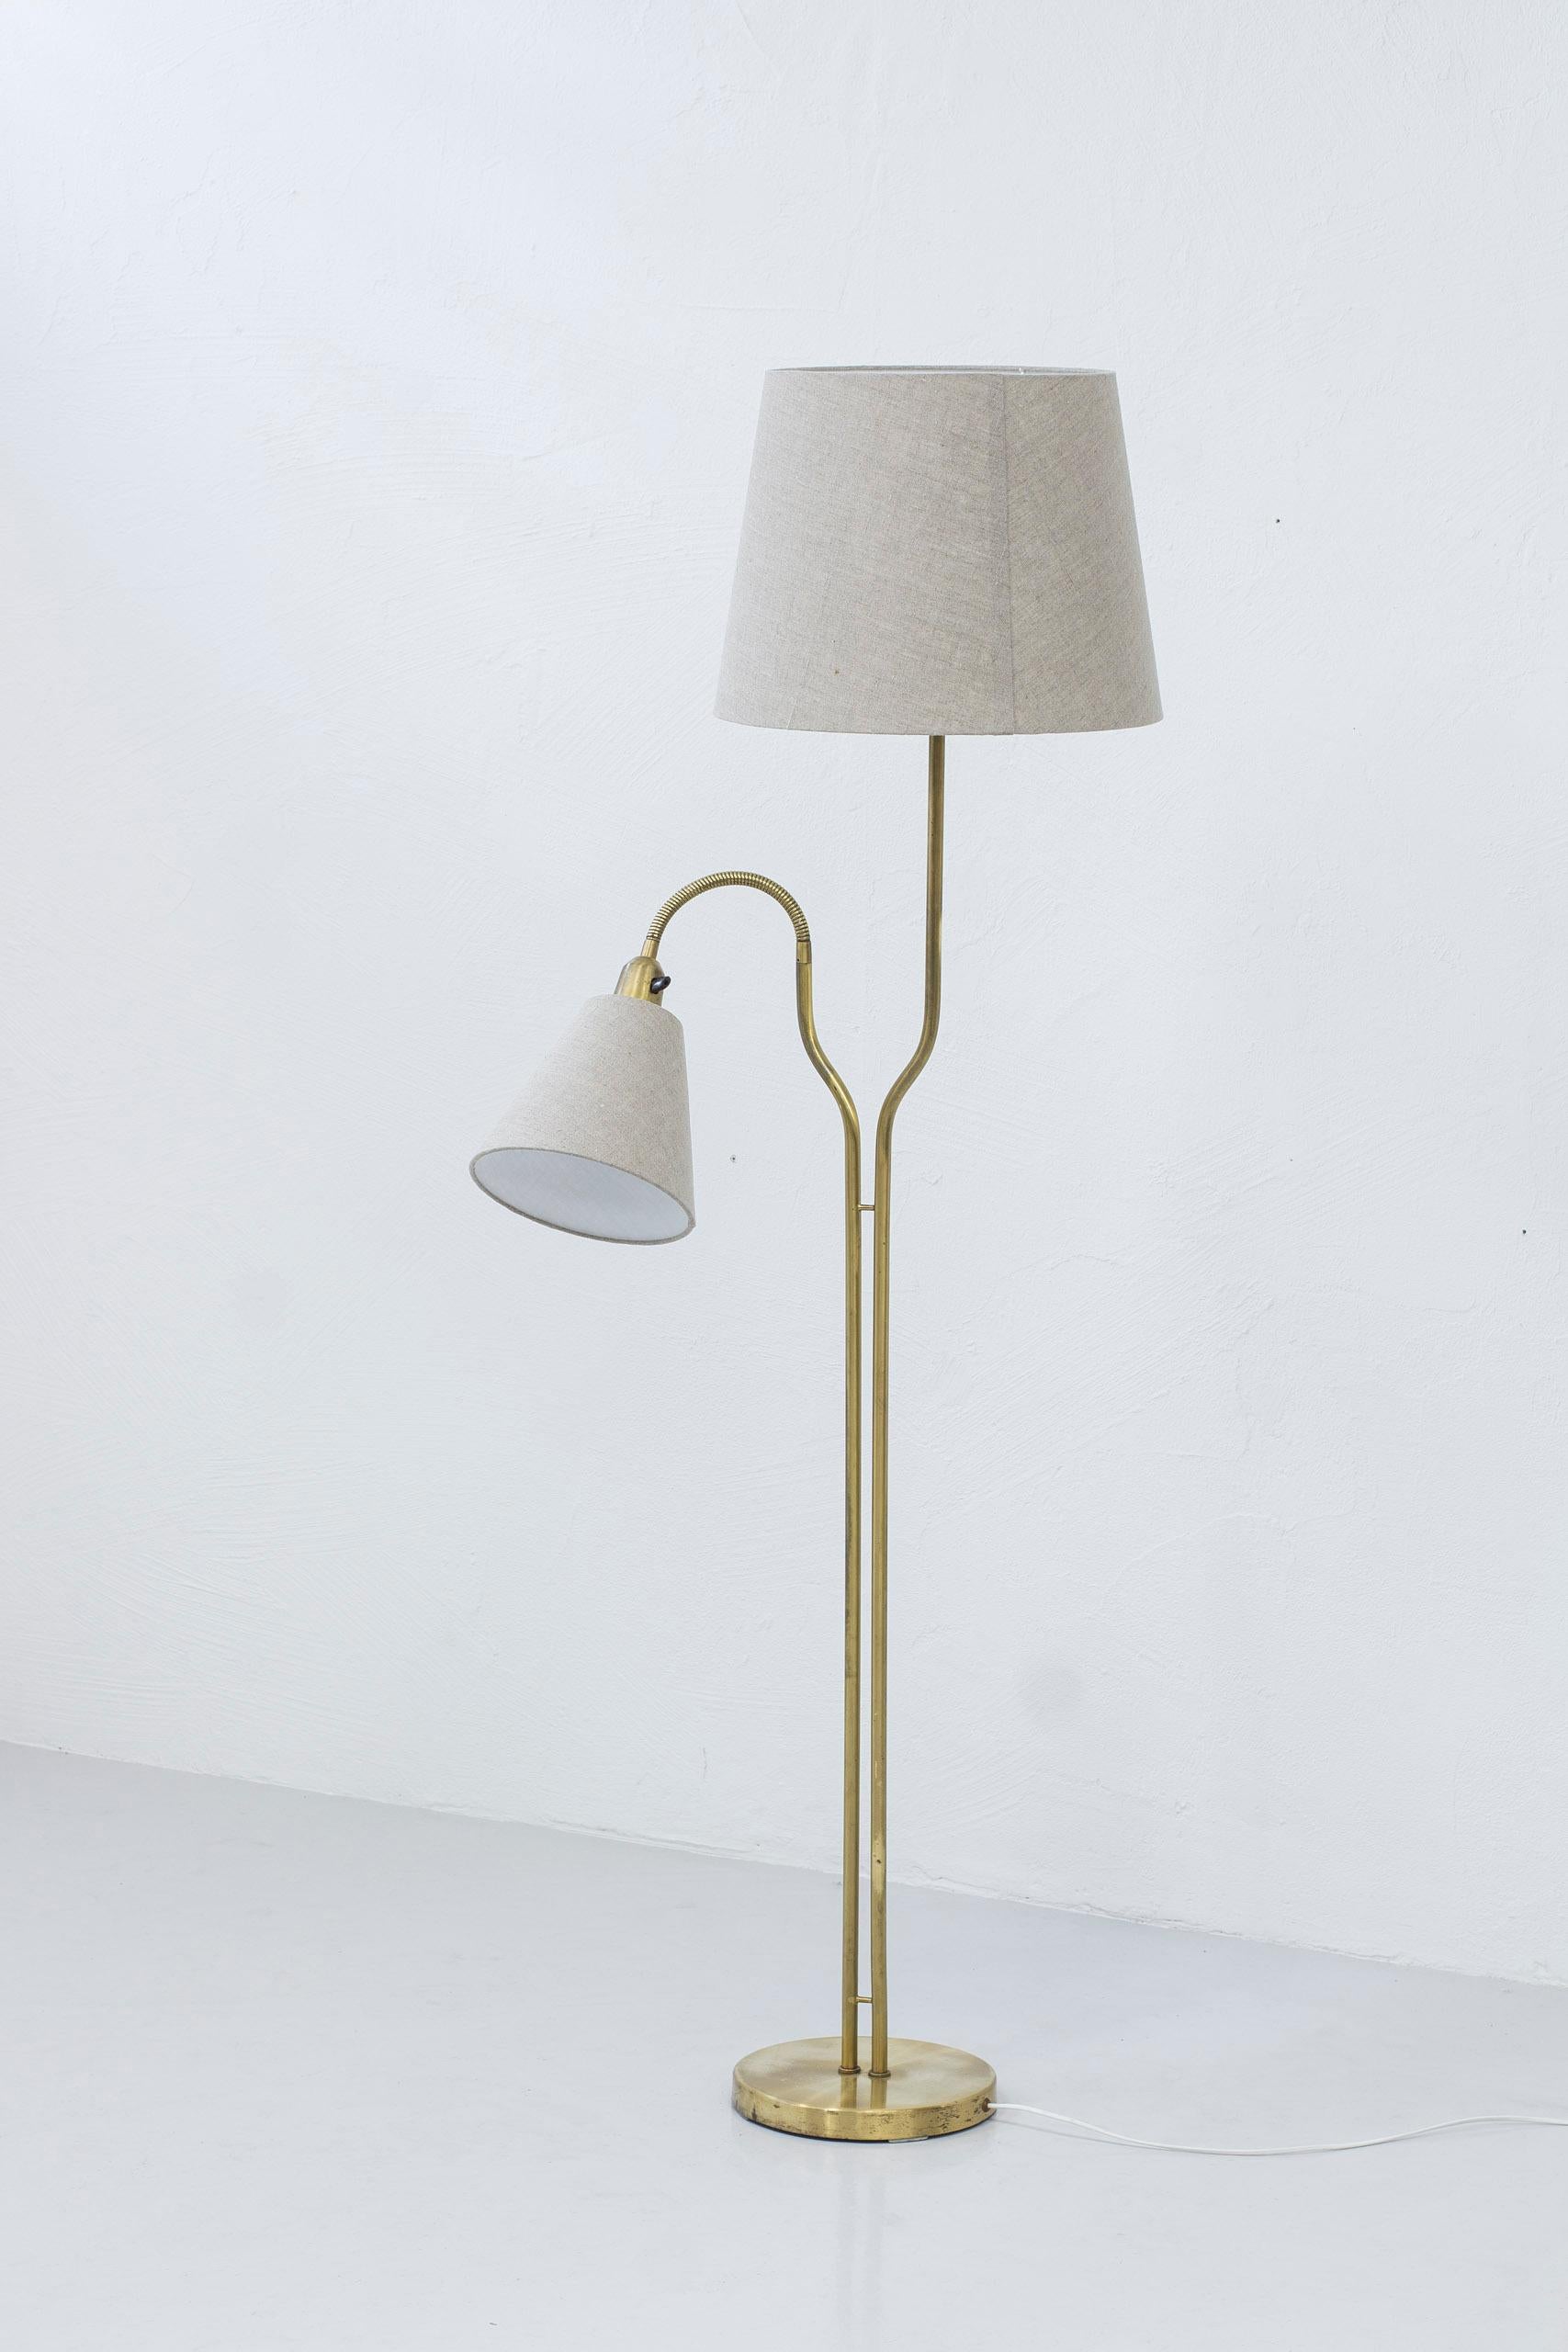 Scandinavian Modern Floor Lamp in Brass by ASEA, Swedish Modern, 1950s